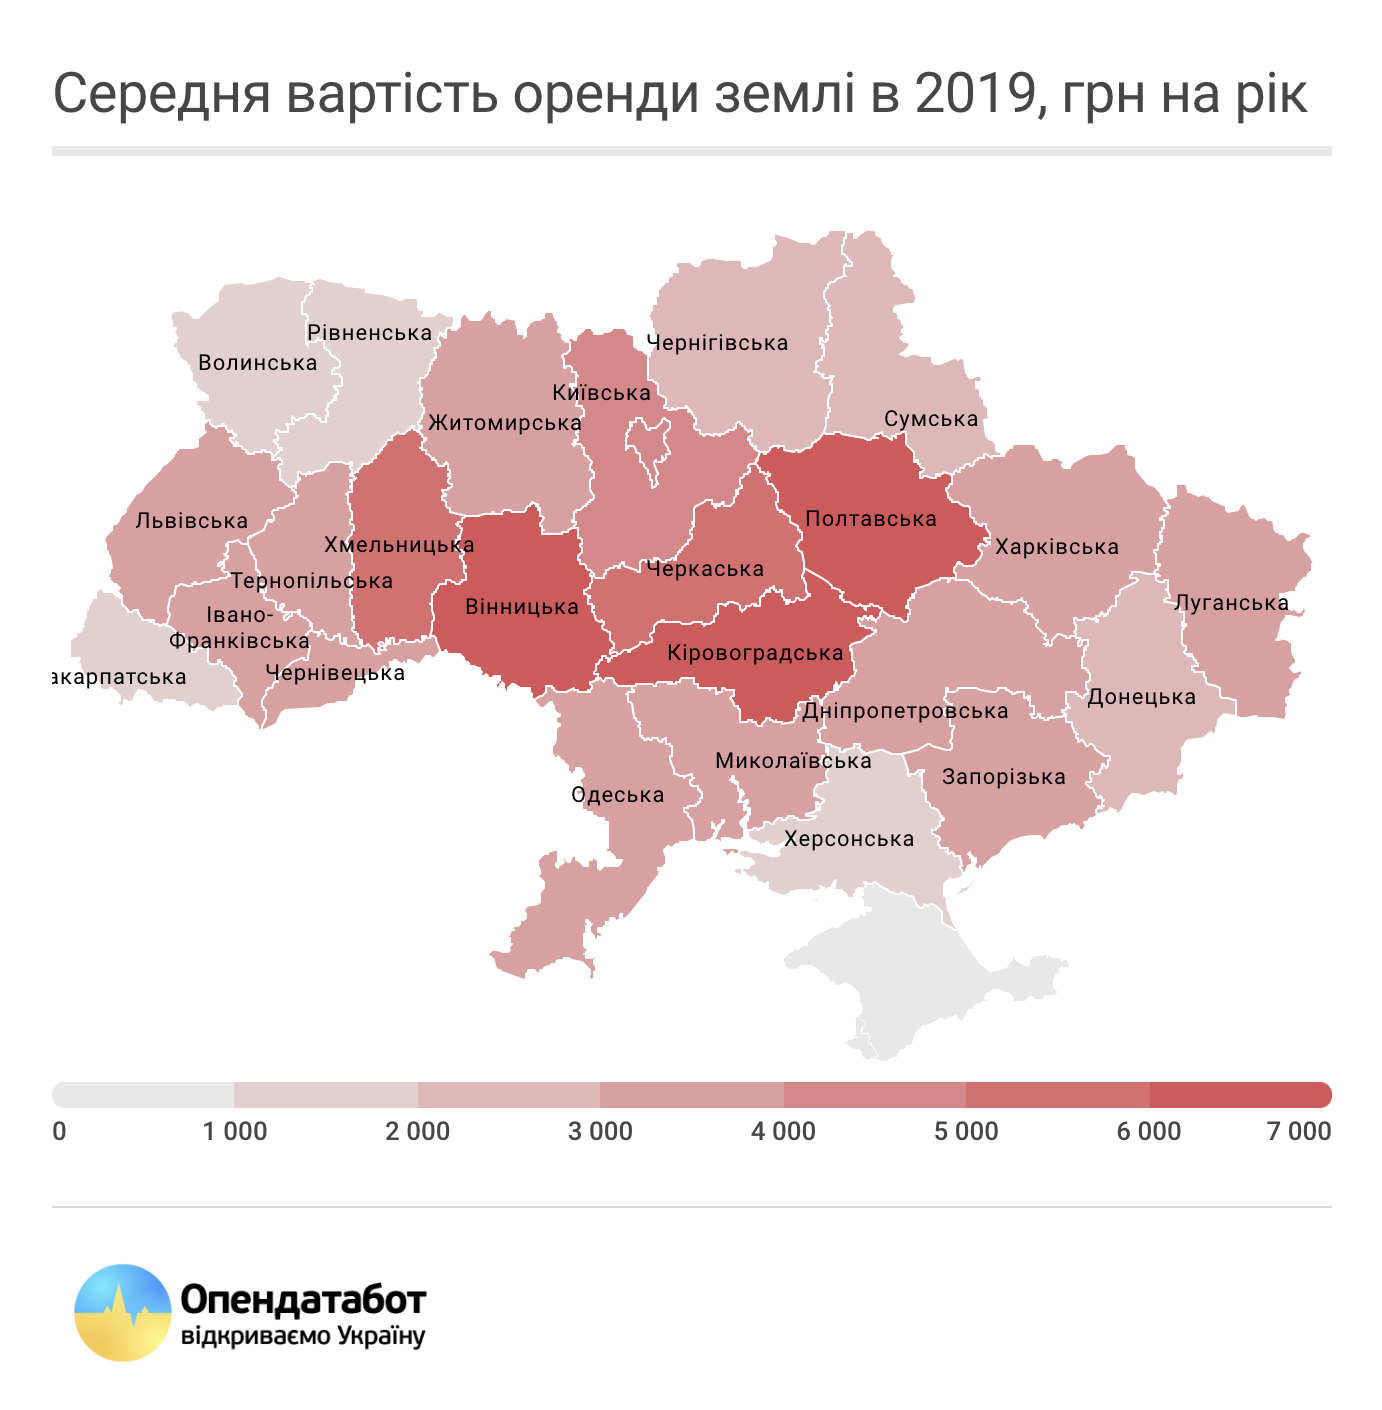 Оренда землі в Україні: де вигідніше здавати свої гектари